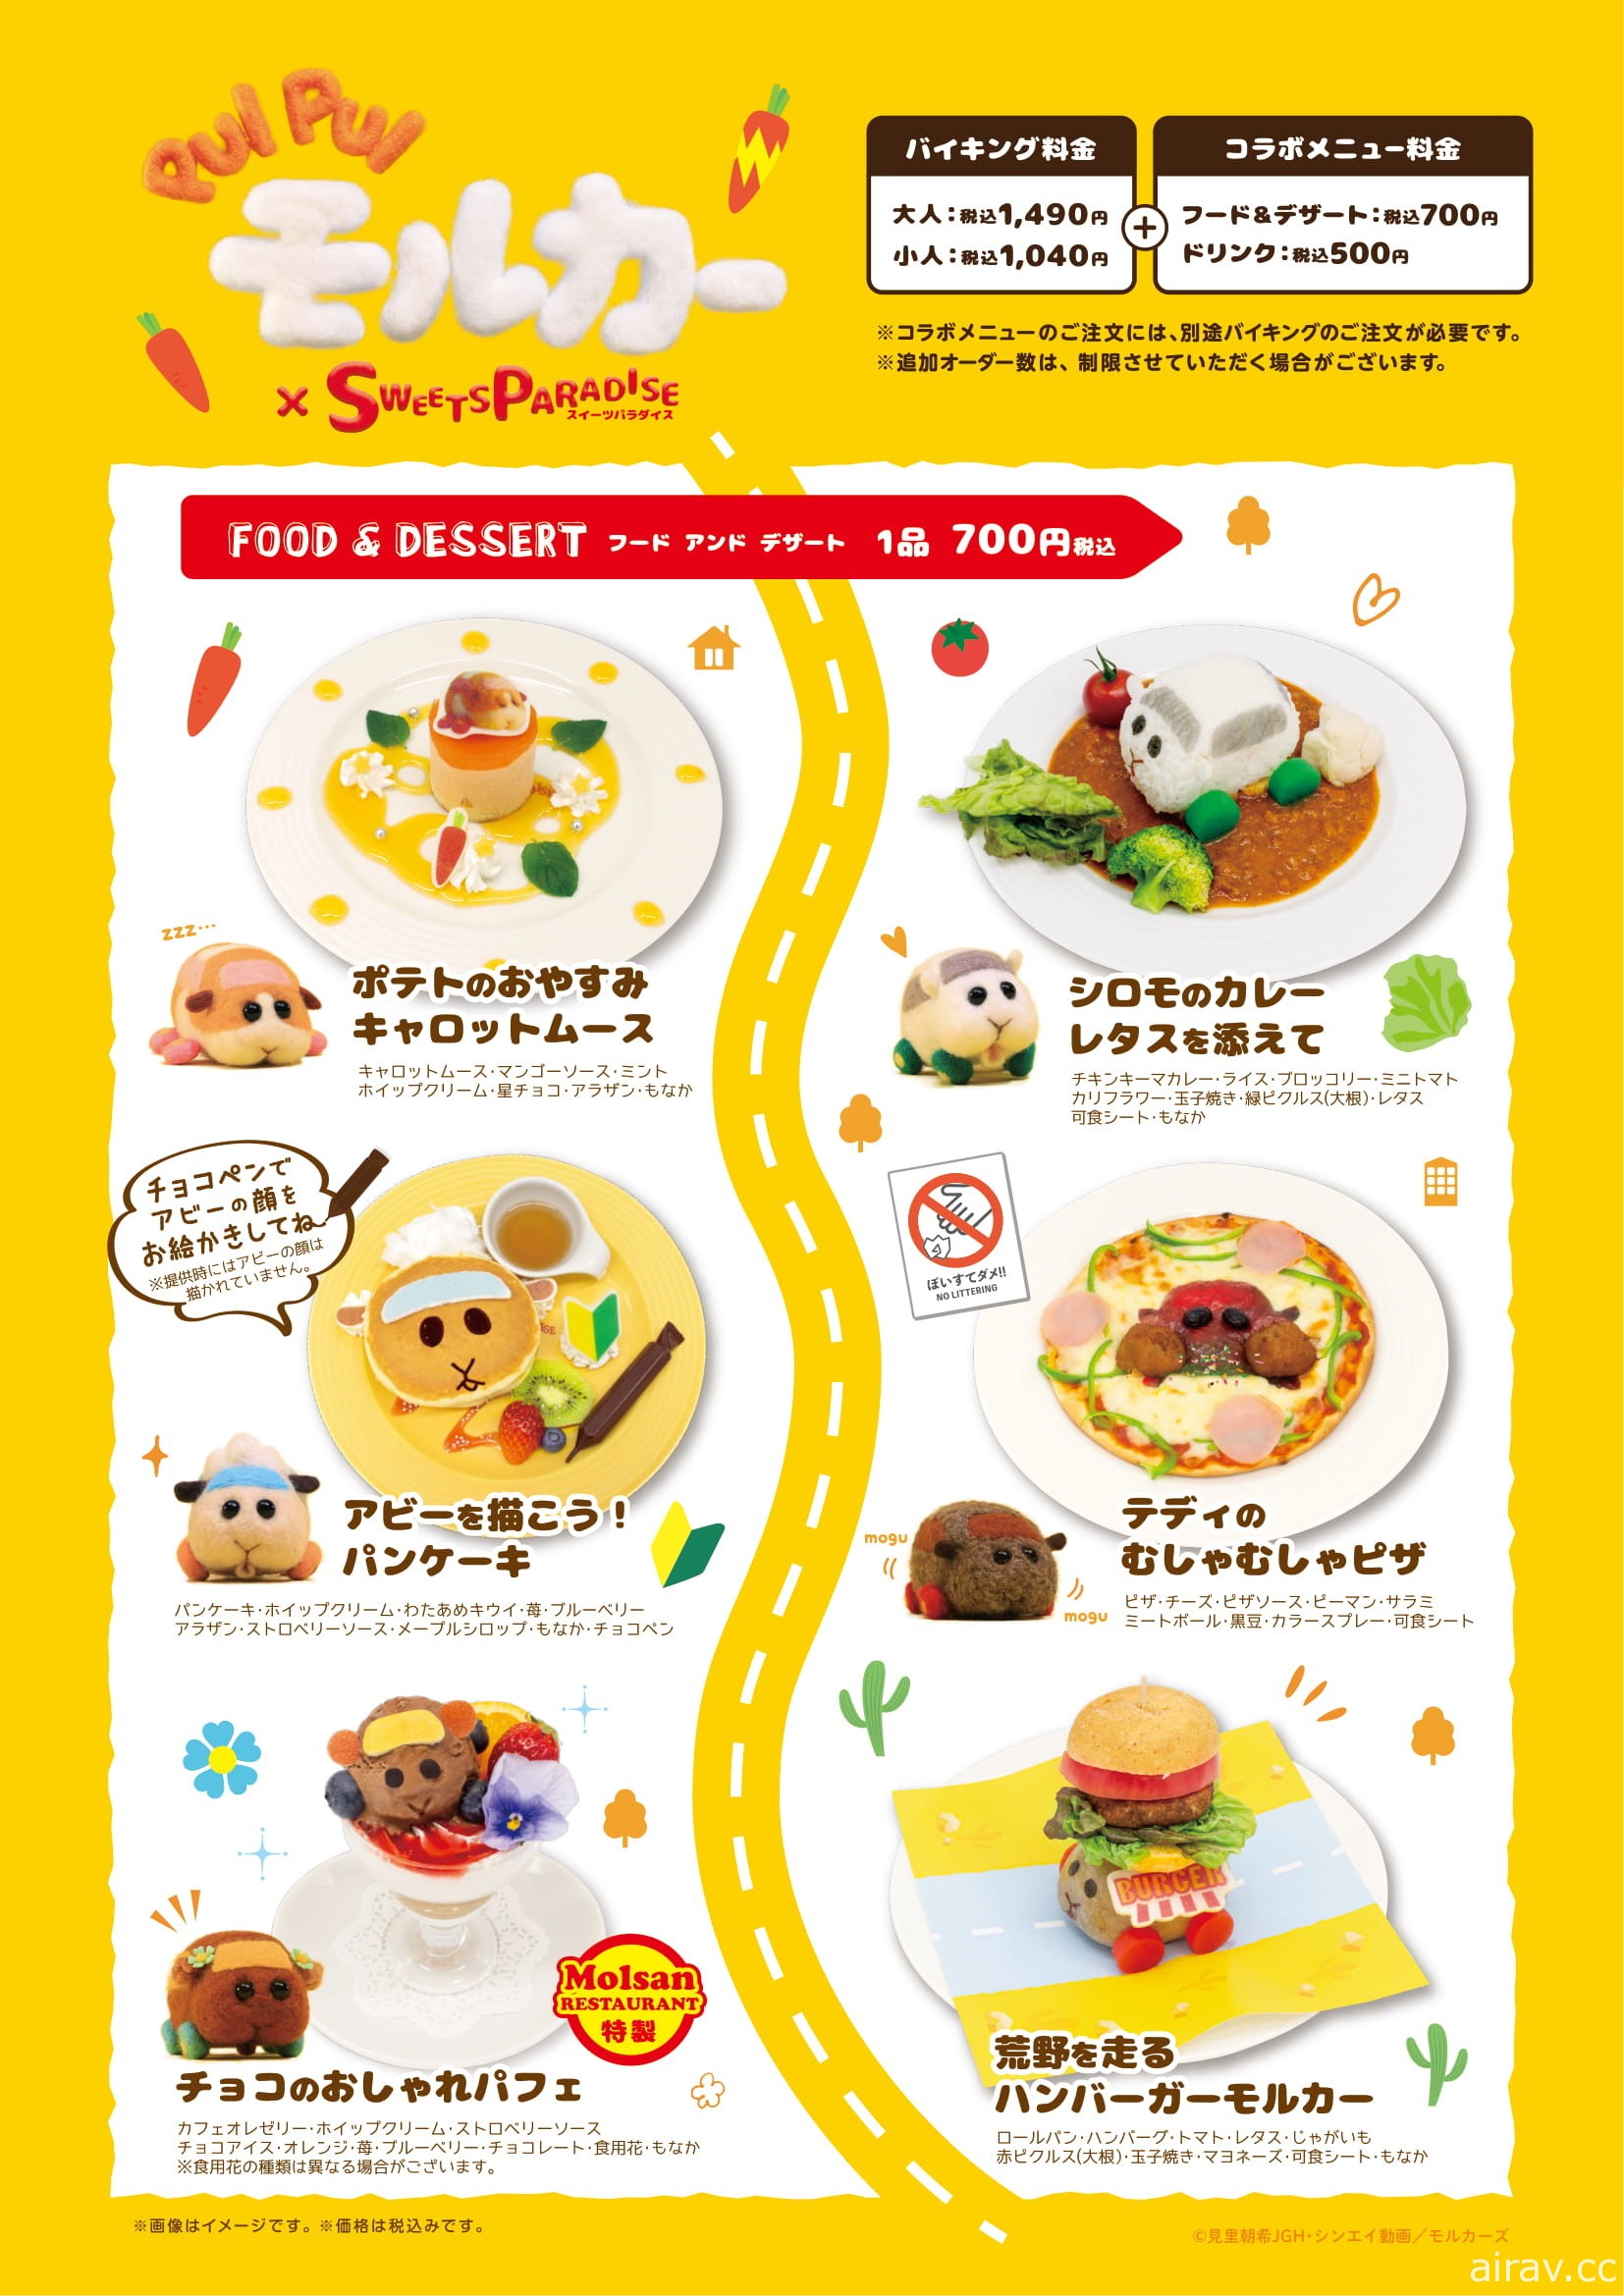 《天竺鼠车车》与日本甜点连锁店合作推出期间限定餐点与周边